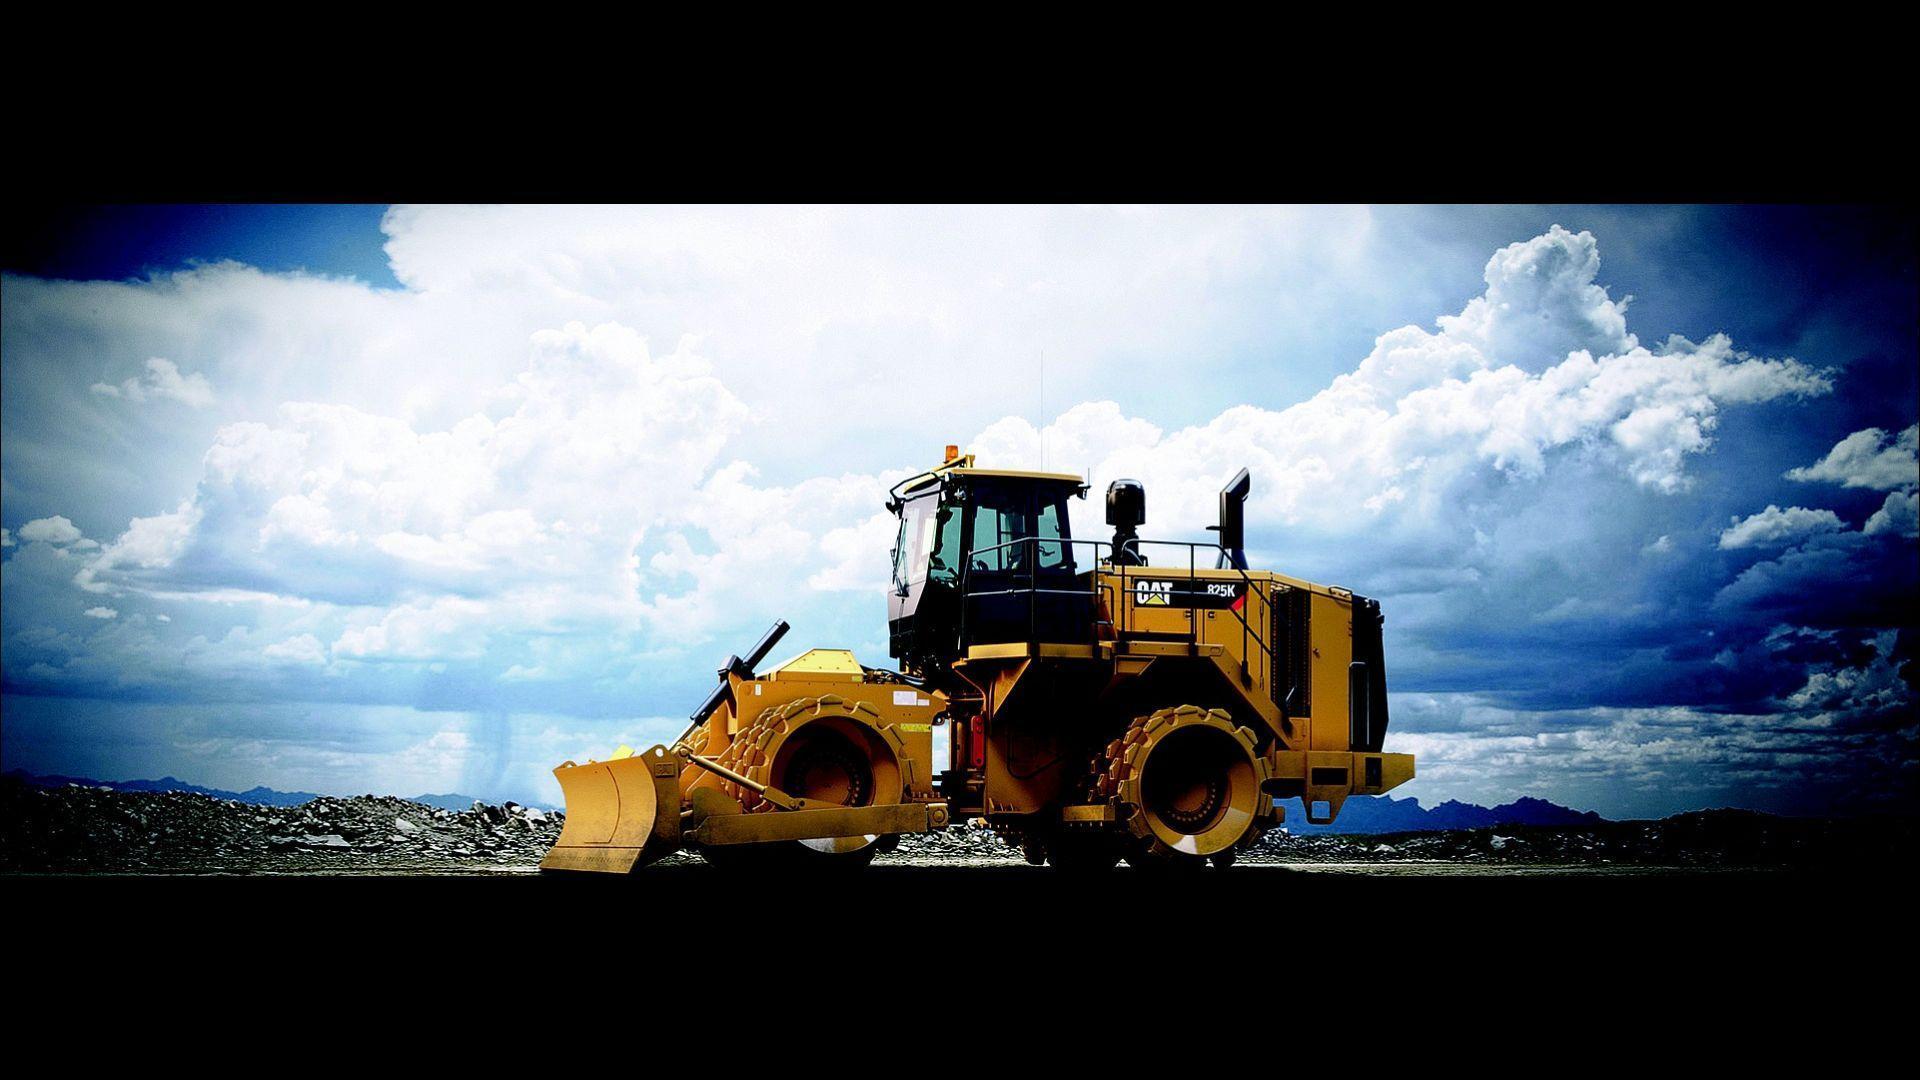 600+ Free Heavy Equipment & Excavator Images - Pixabay